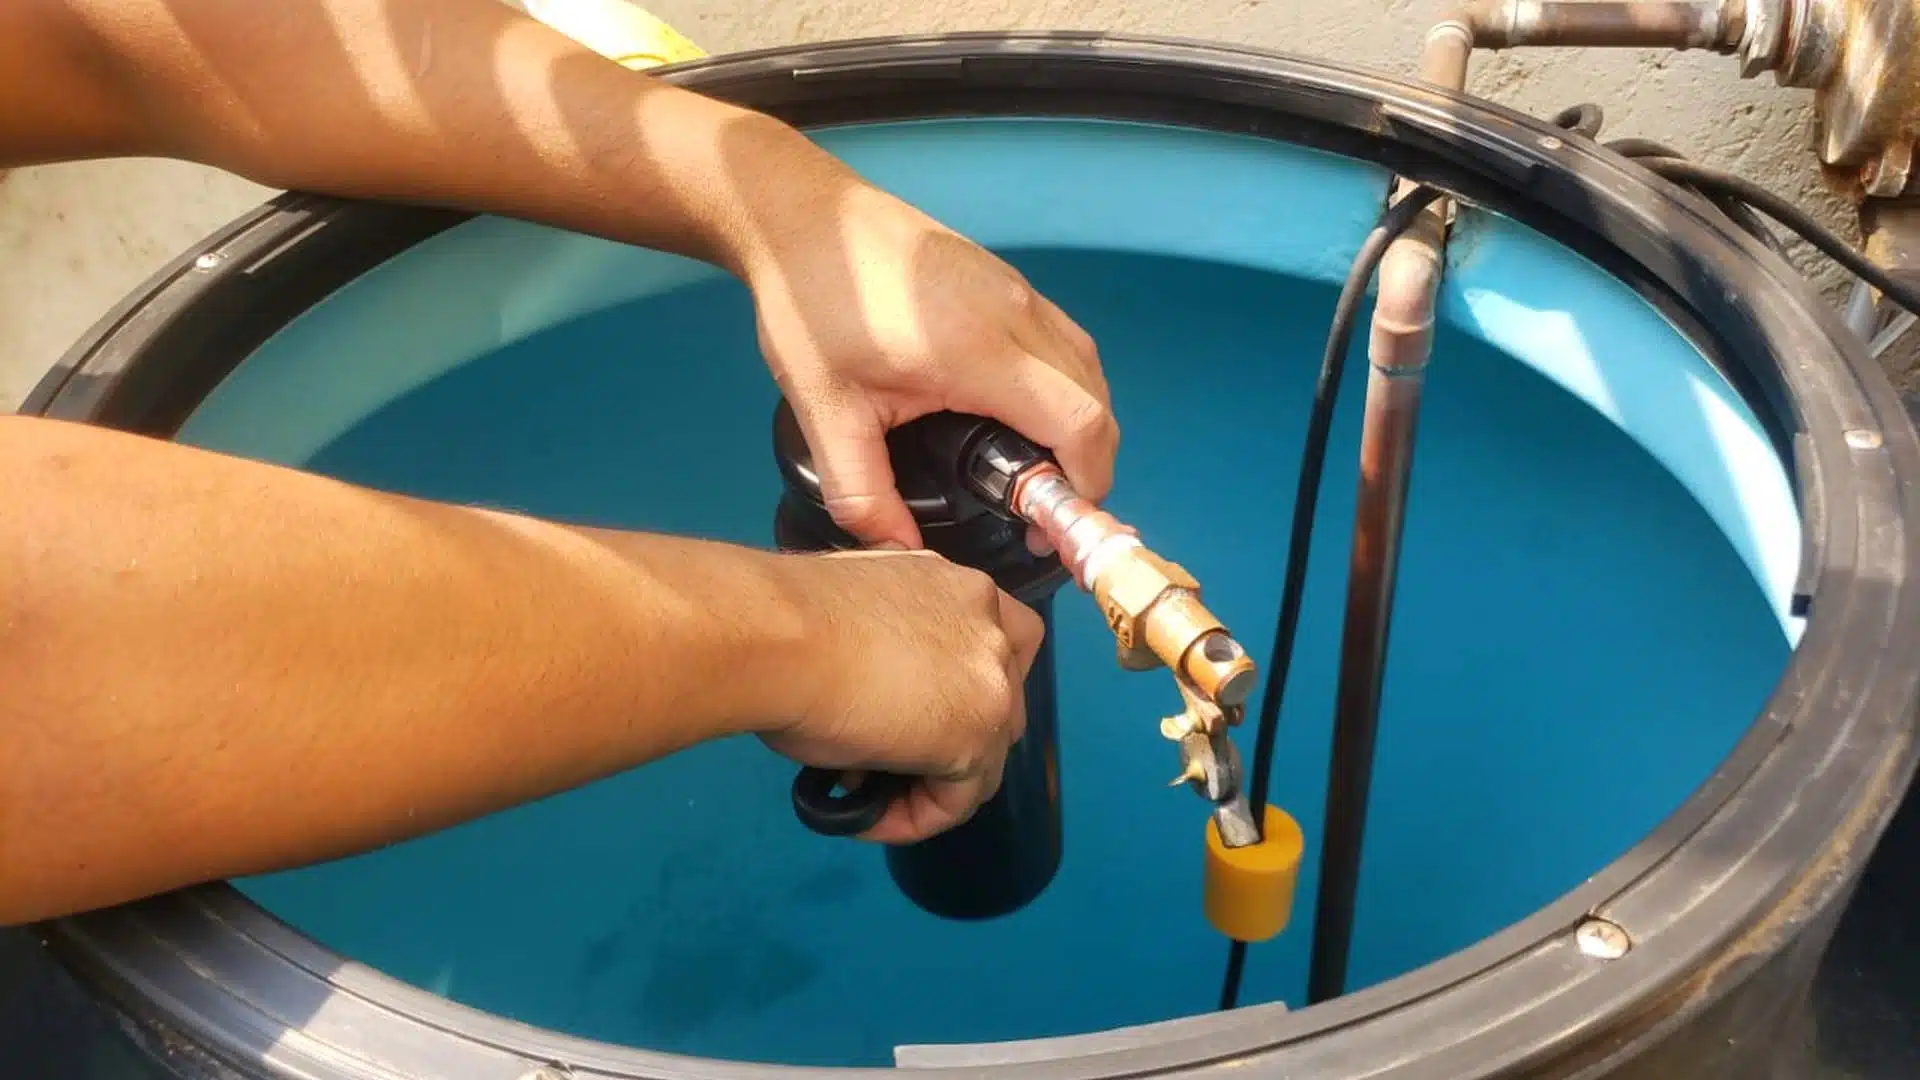 Una persona instalando un filtro en la entrada de agua en un tinaco